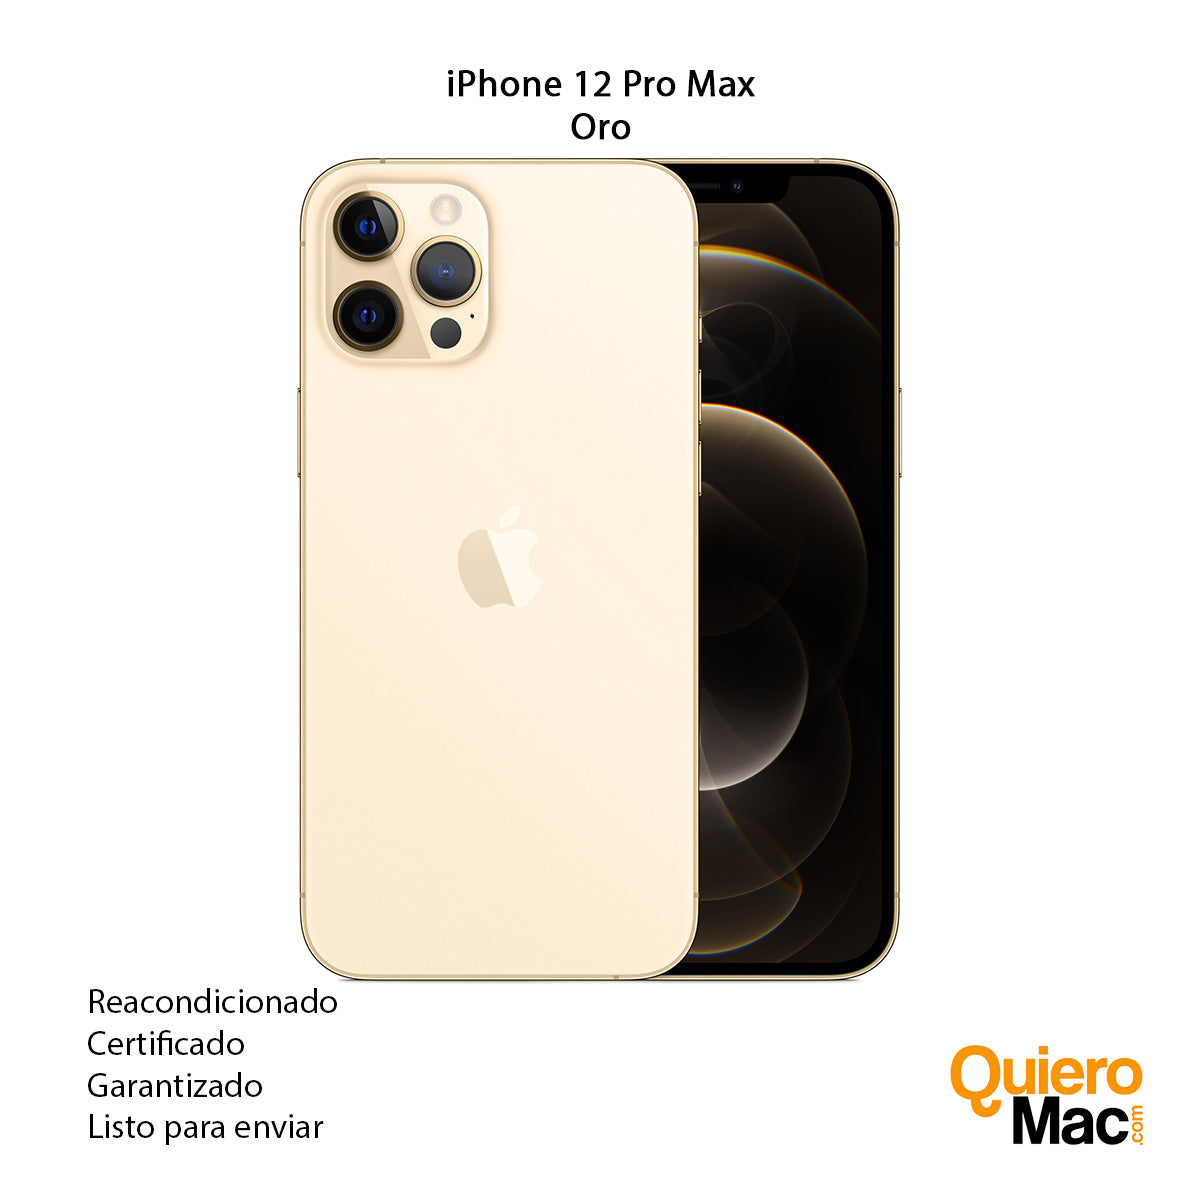 pone en oferta el iPhone X por sólo 590€ como reacondicionado  certificado y con un año de garantía